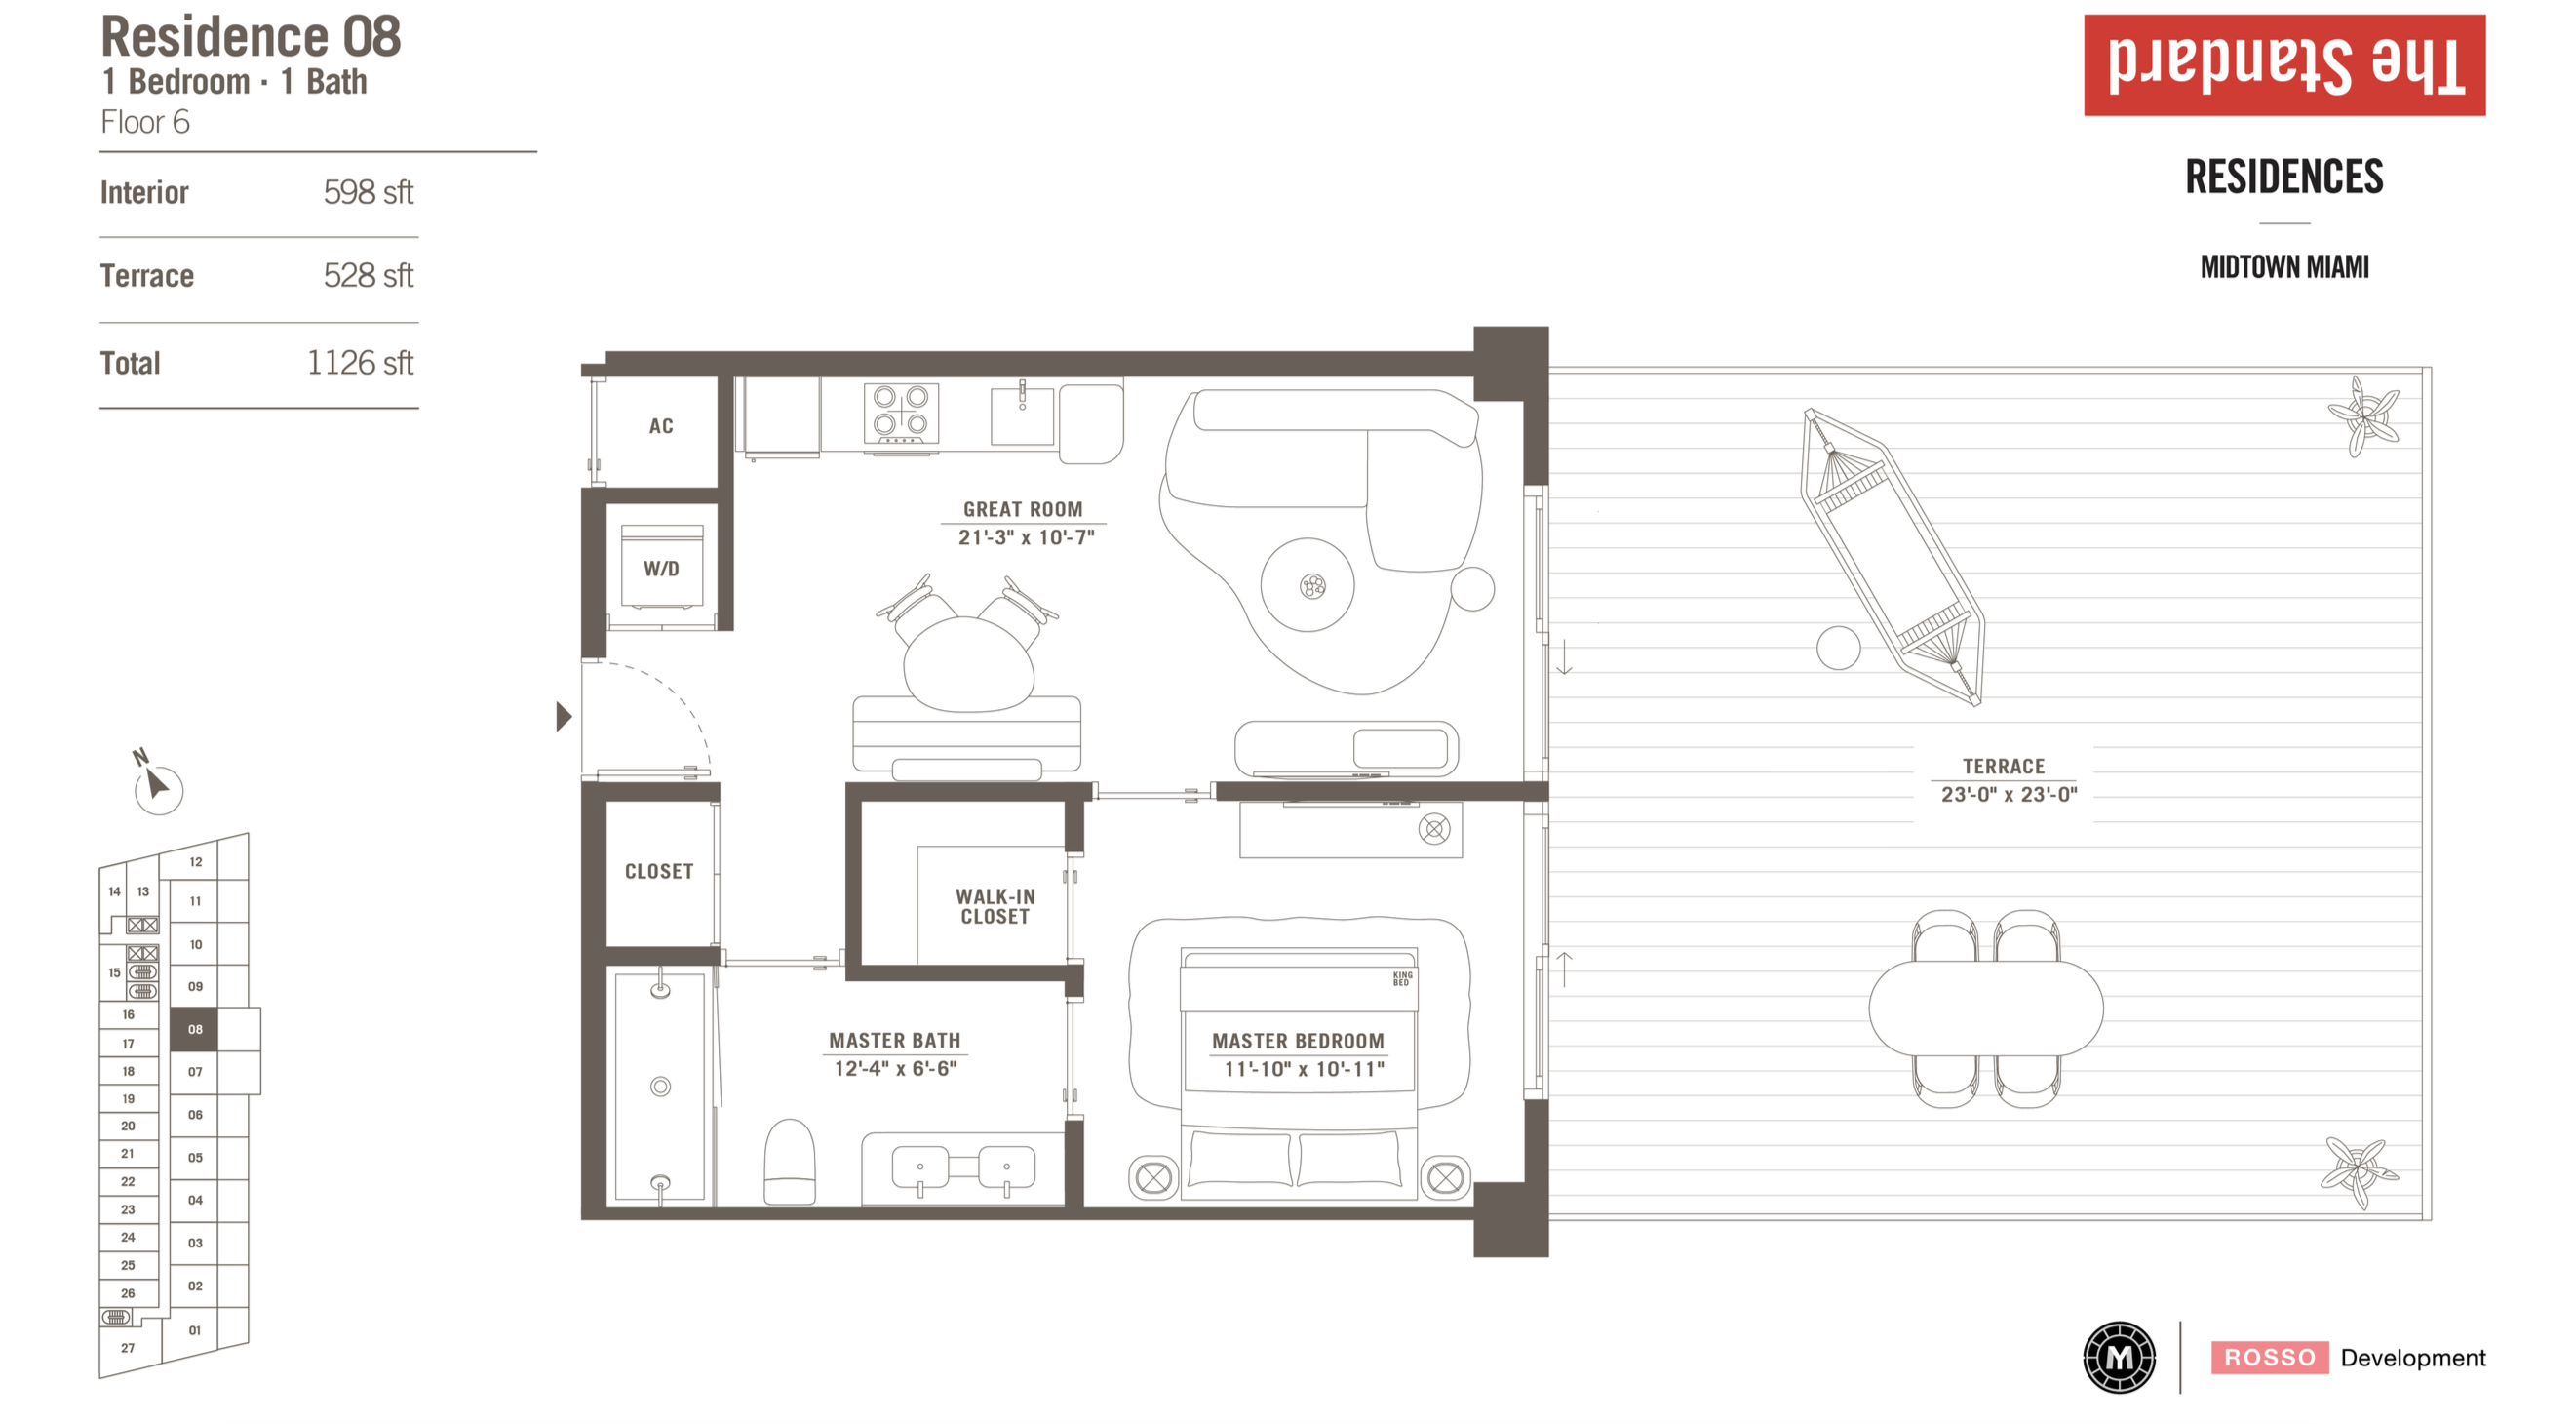 The Standard Residences | Residence 08 | 1 be/1ba | 598 SF | Floor 6